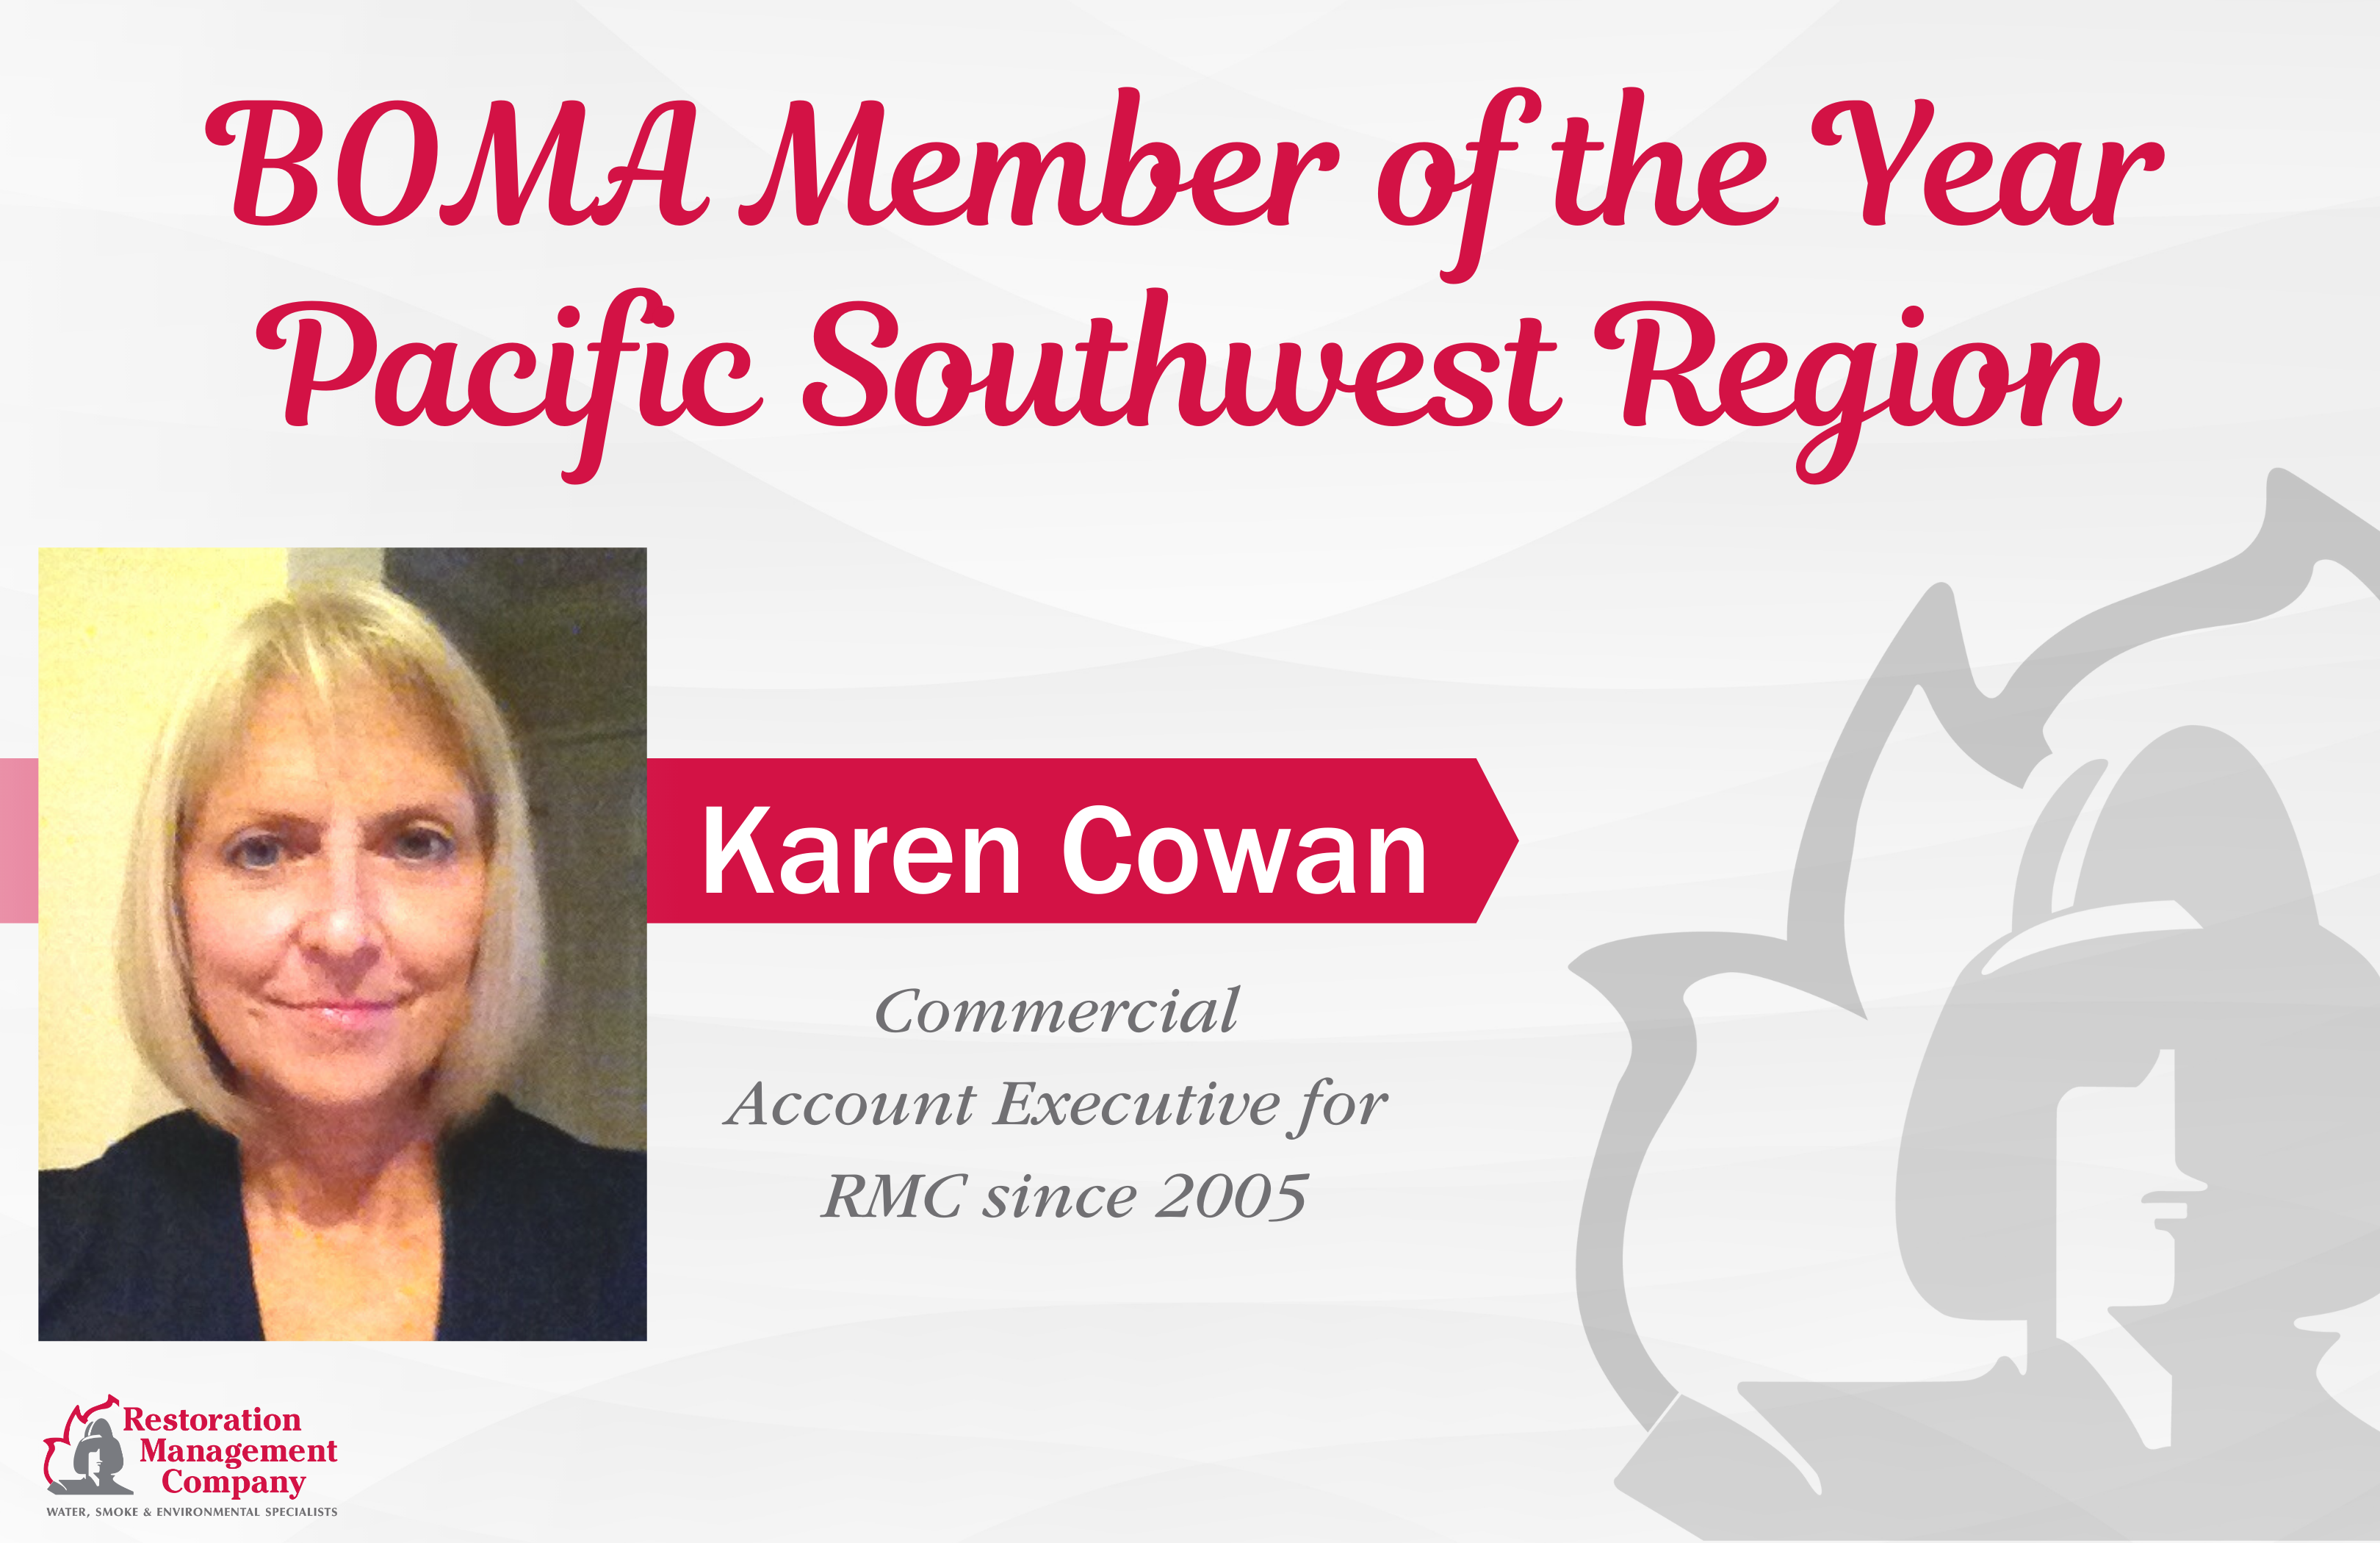 Karen Cowan Announced BOMA Regional Member of the Year!